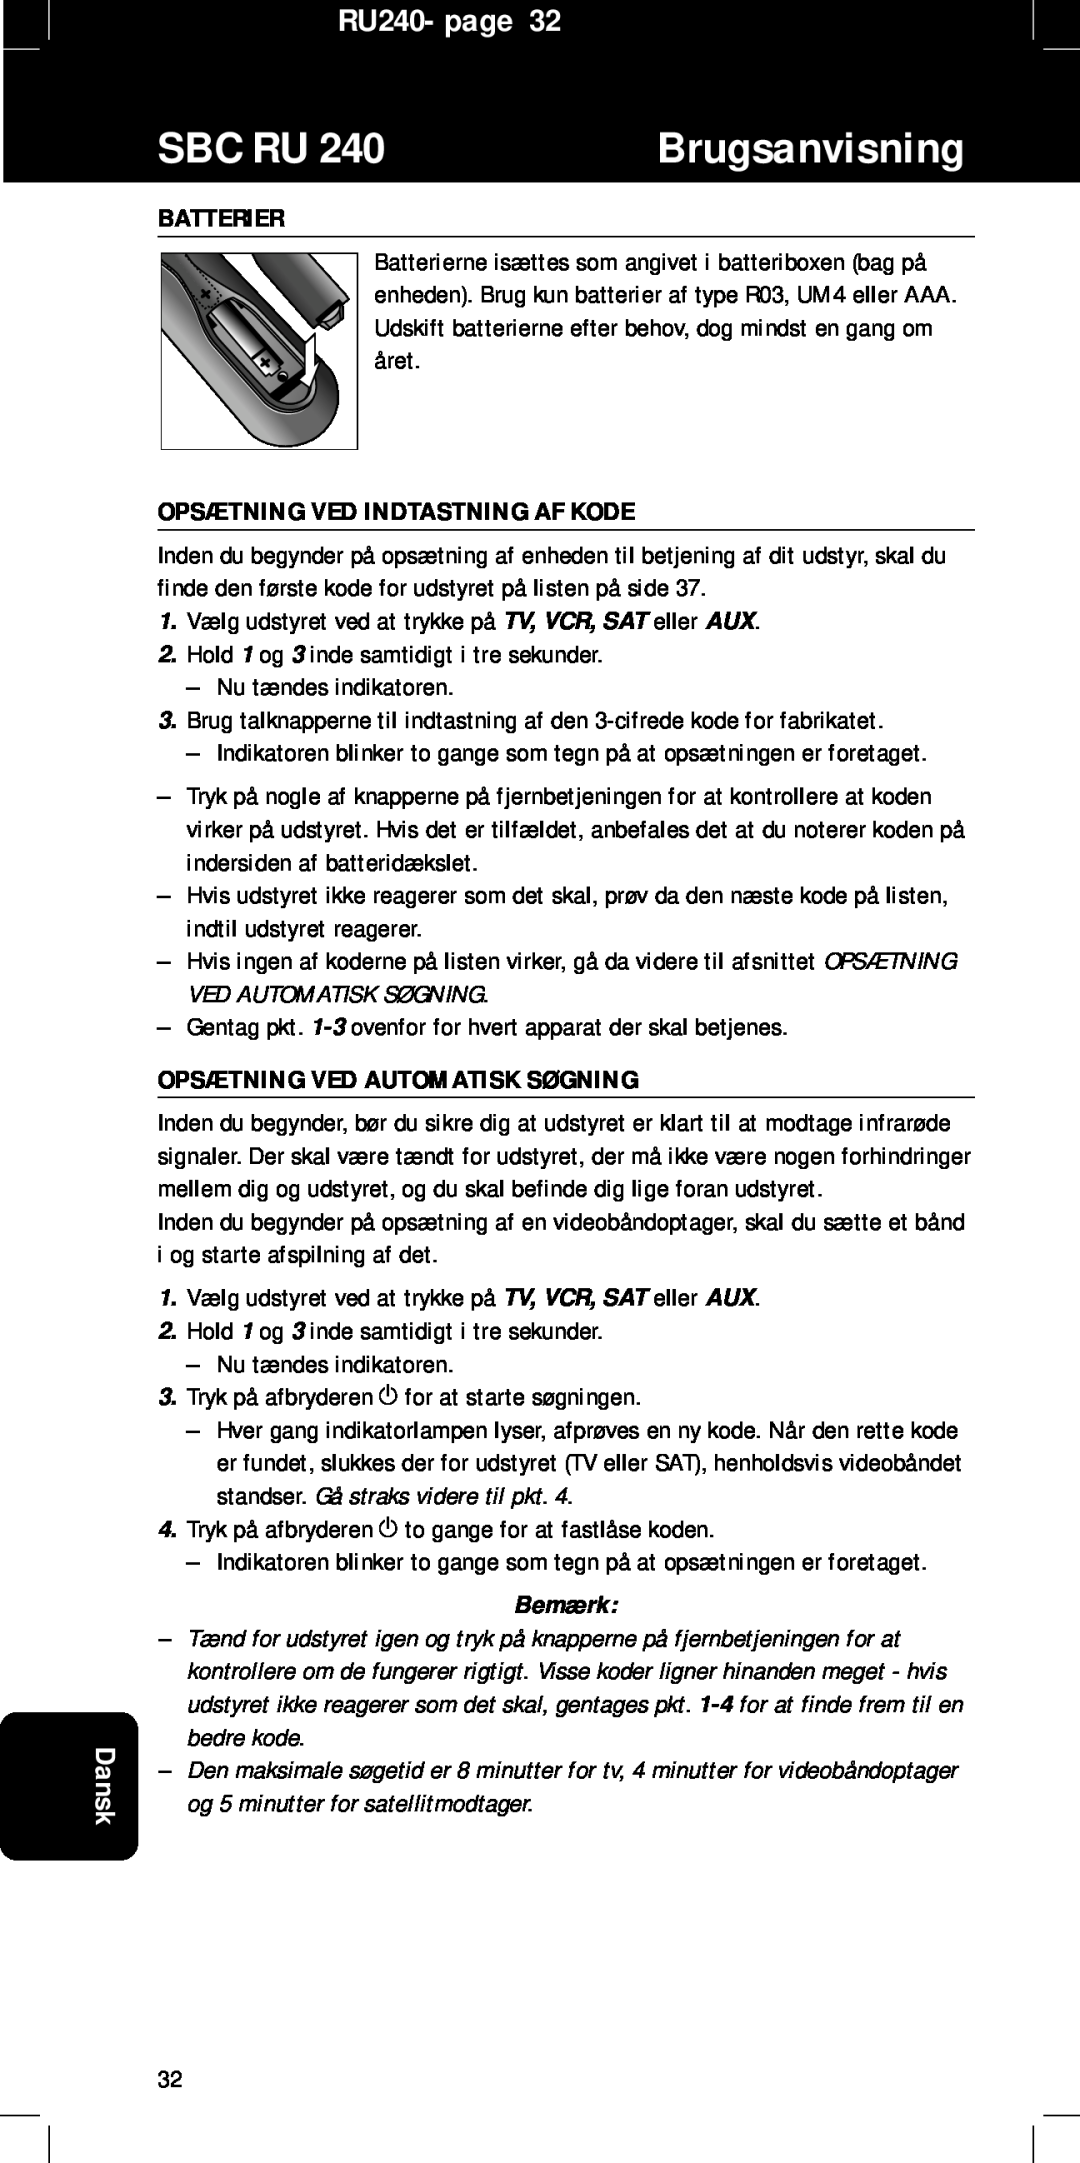 Philips Opsætning Ved Indtastning Af Kode, Opsætning Ved Automatisk Søgning, Sbc Ru, Brugsanvisning, RU240- page, Dansk 